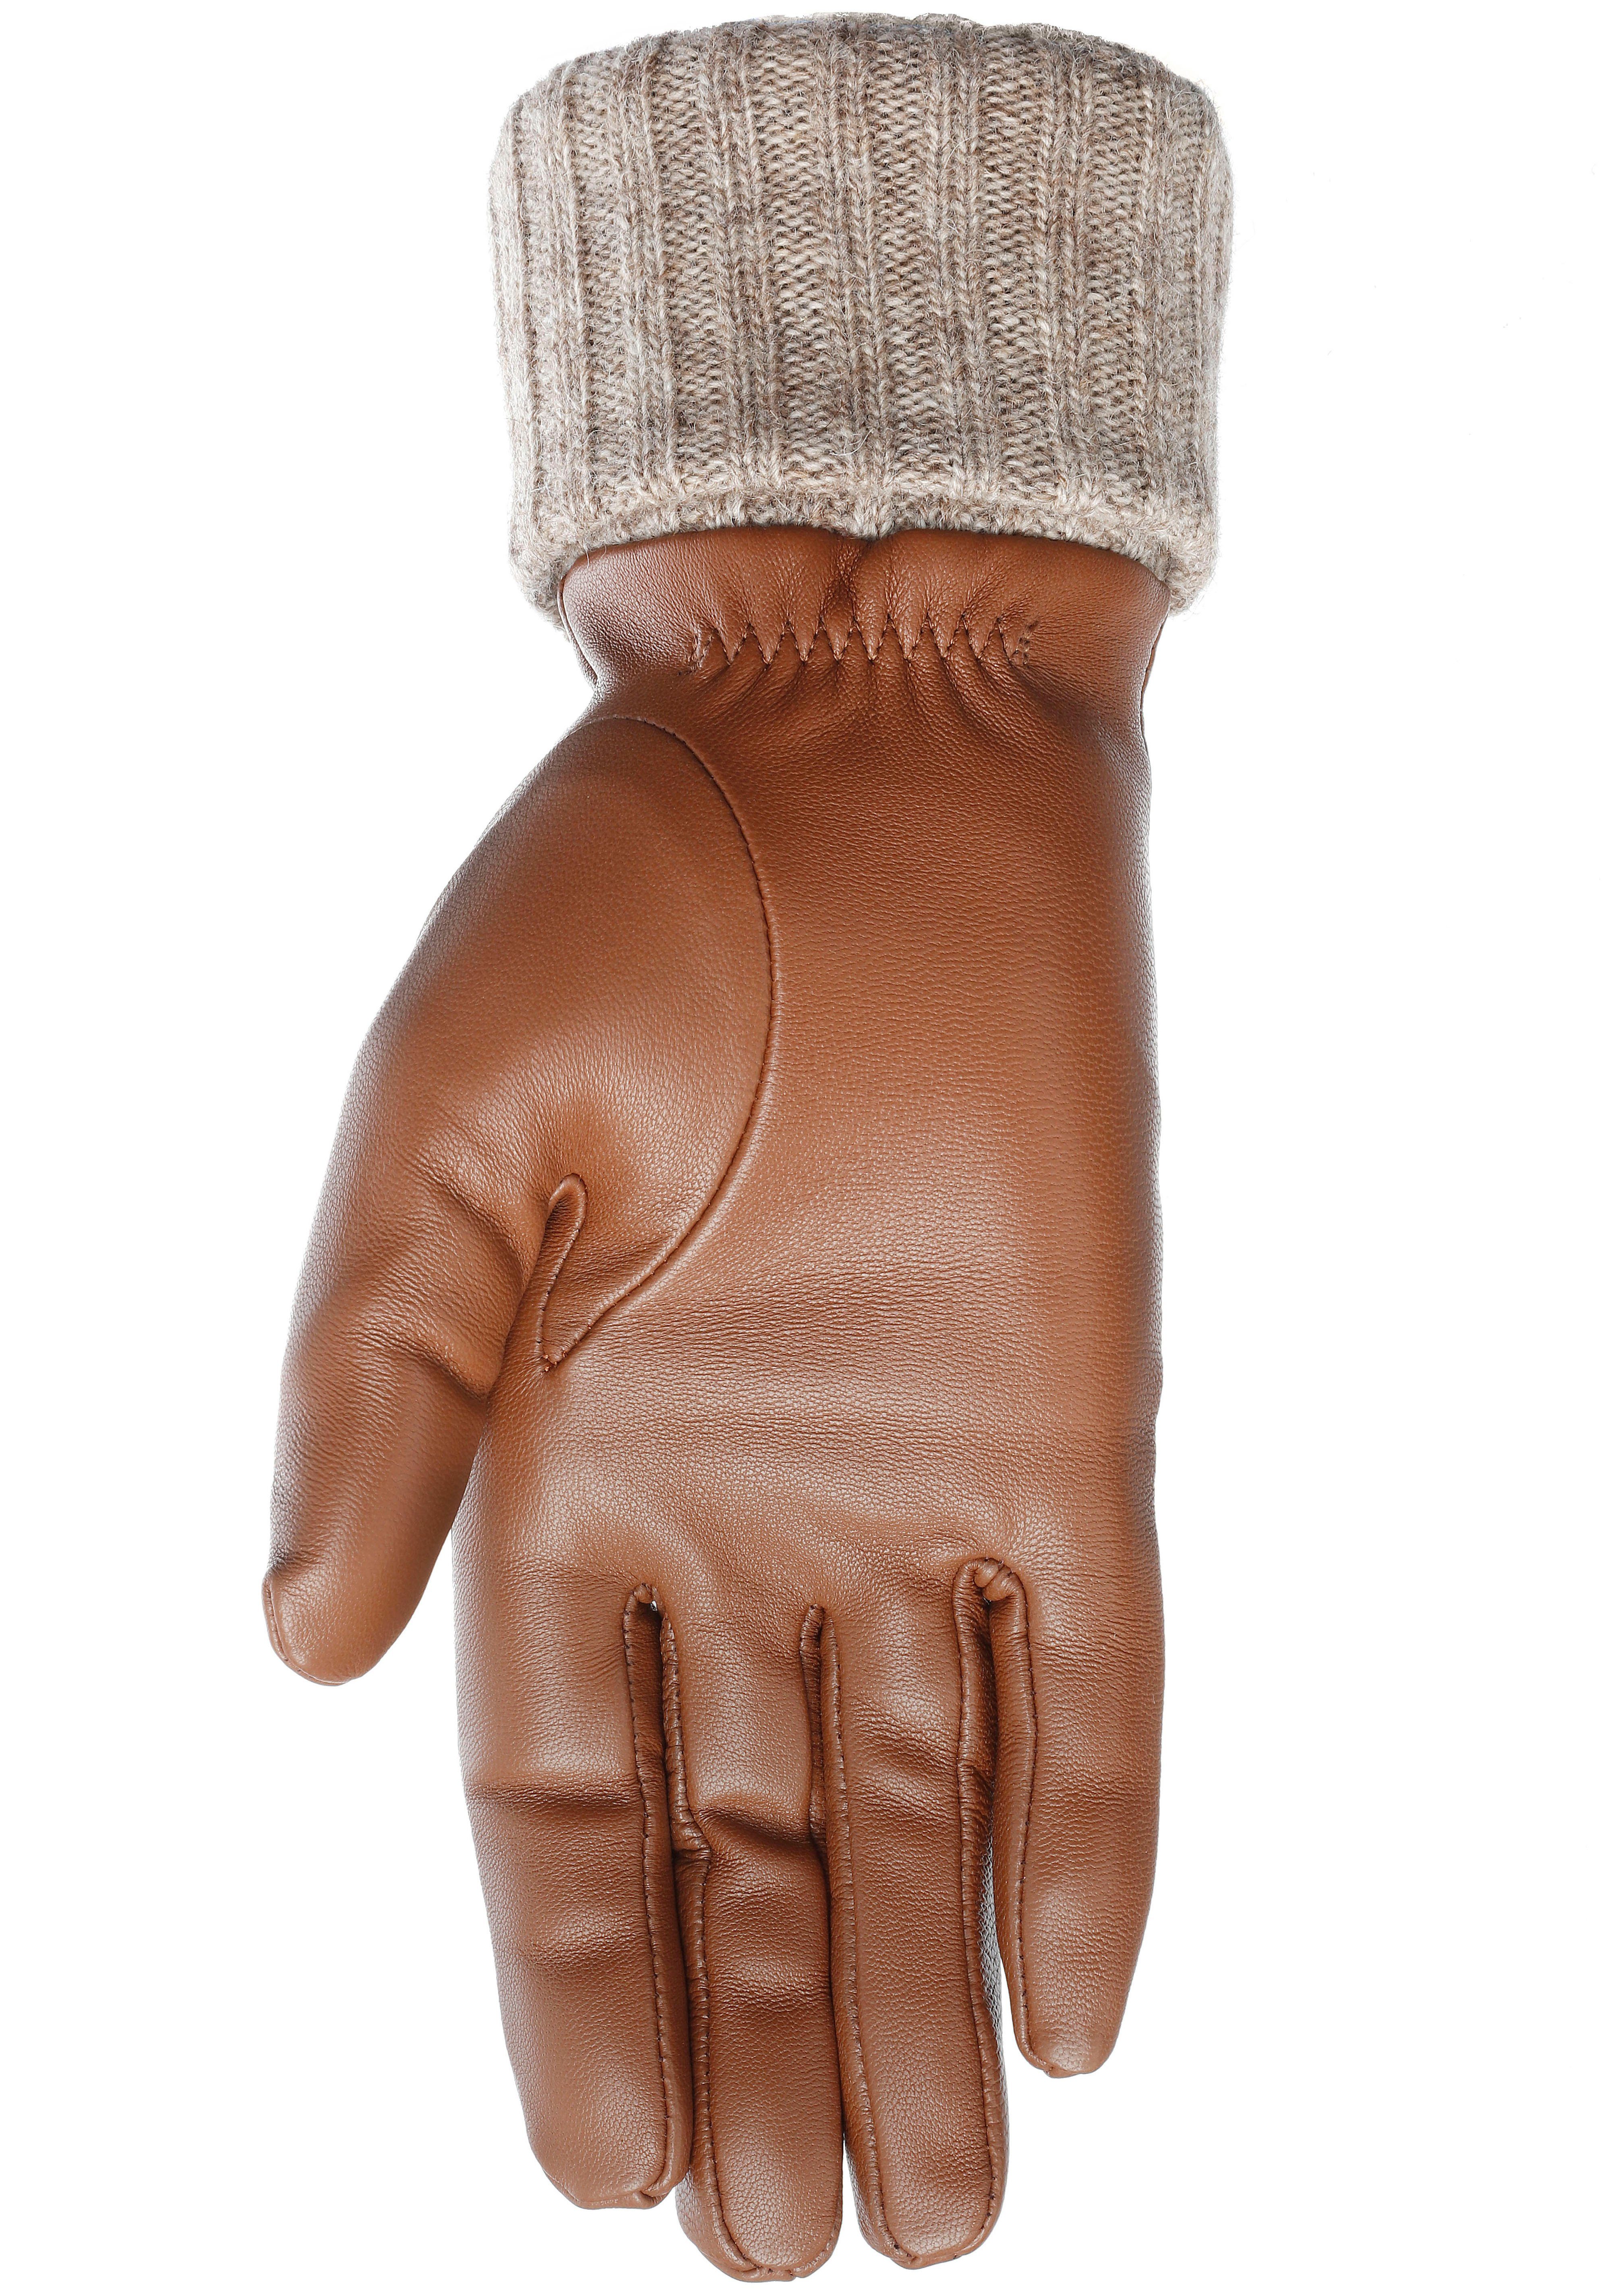 PEARLWOOD Lederhandschuhe Fingern mit Lipa bedienbar - 10 Touchscreen proofed